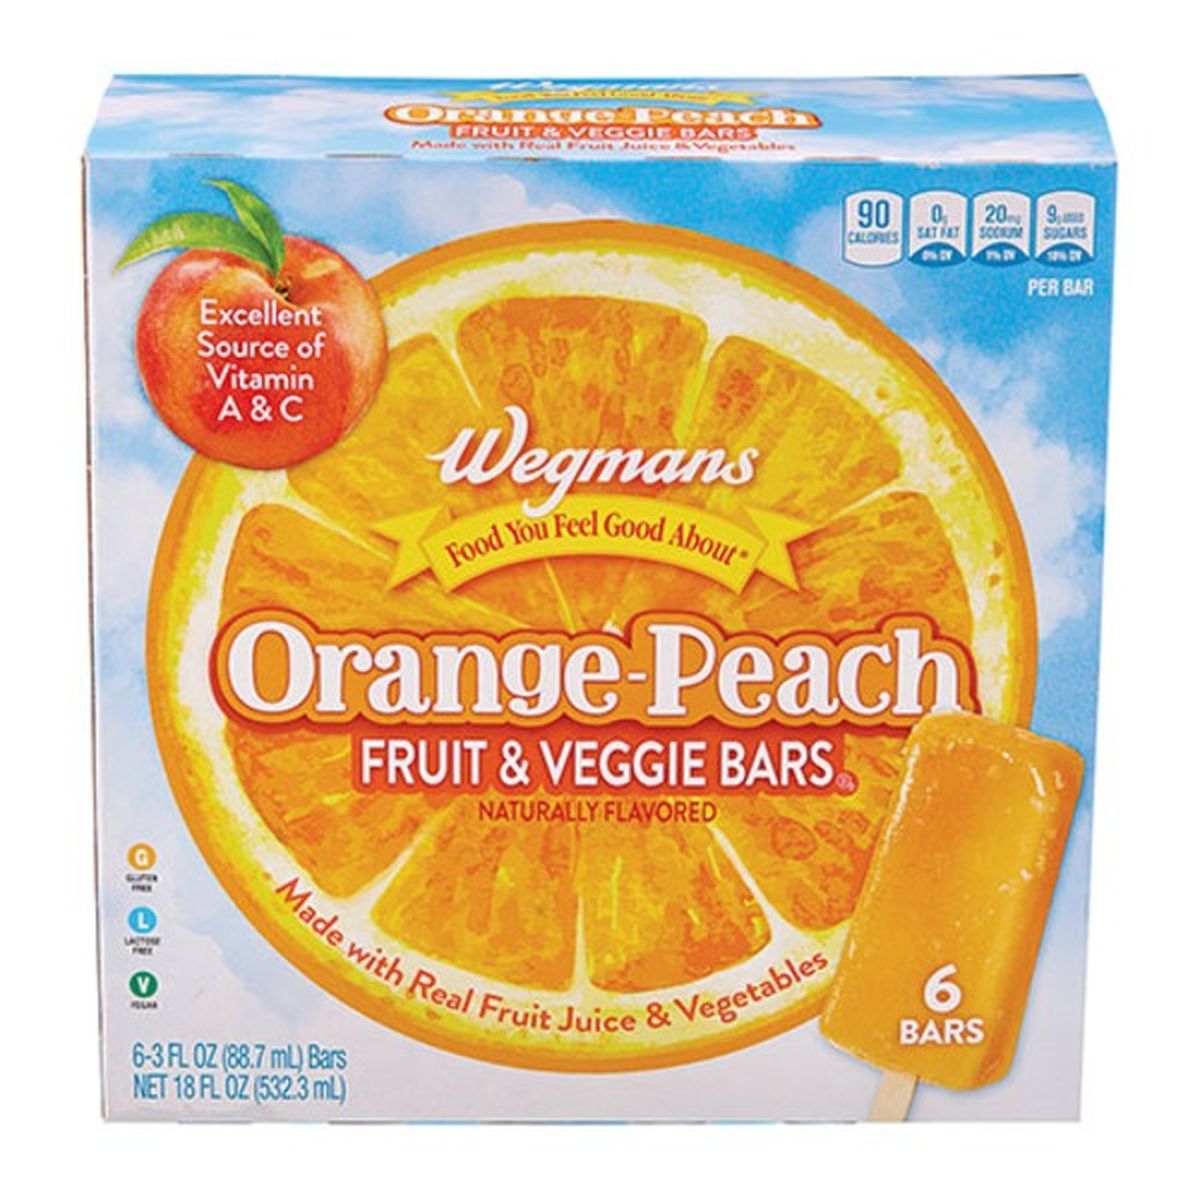 Calories in Wegmans Orange Peach Fruit & Veggie Bars